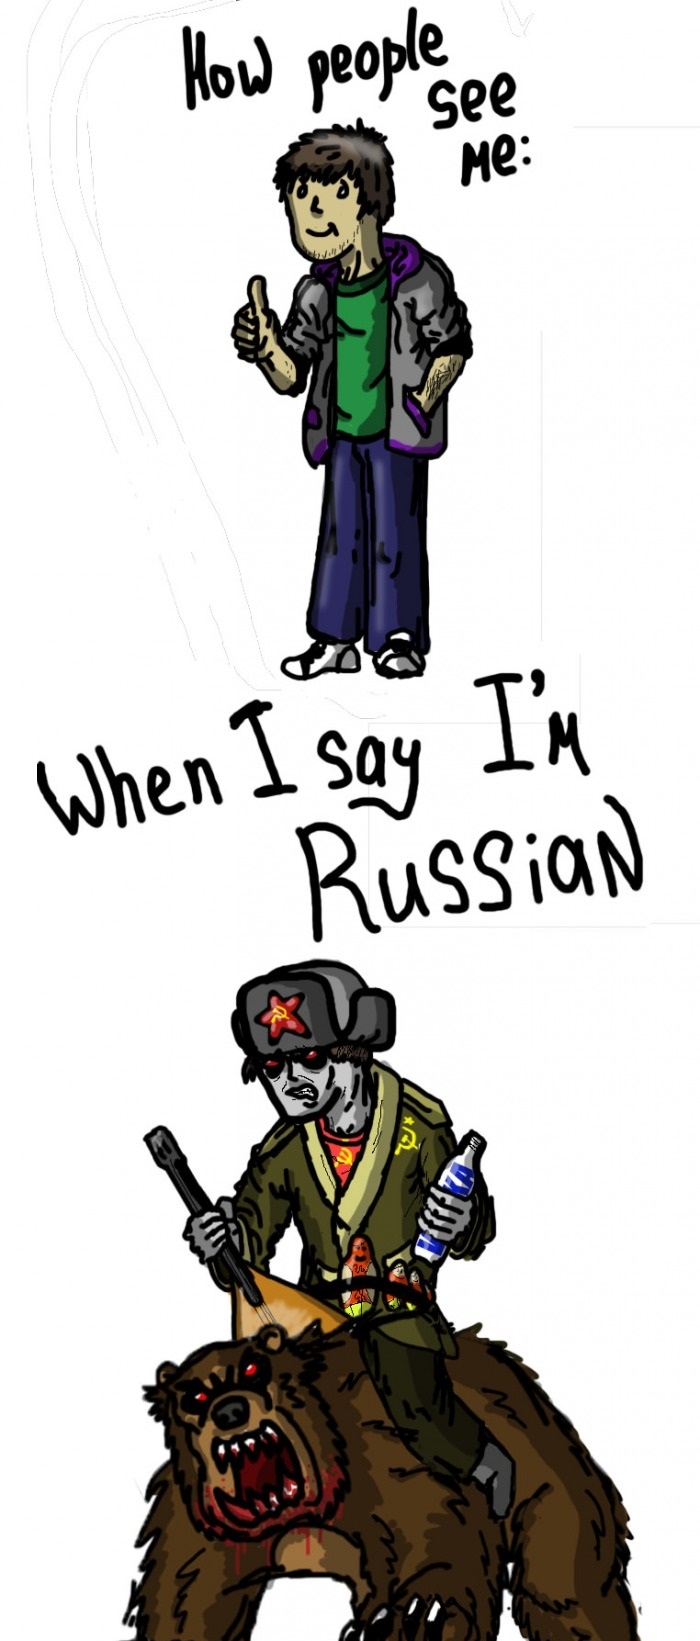 Yep. Soviet Russia!